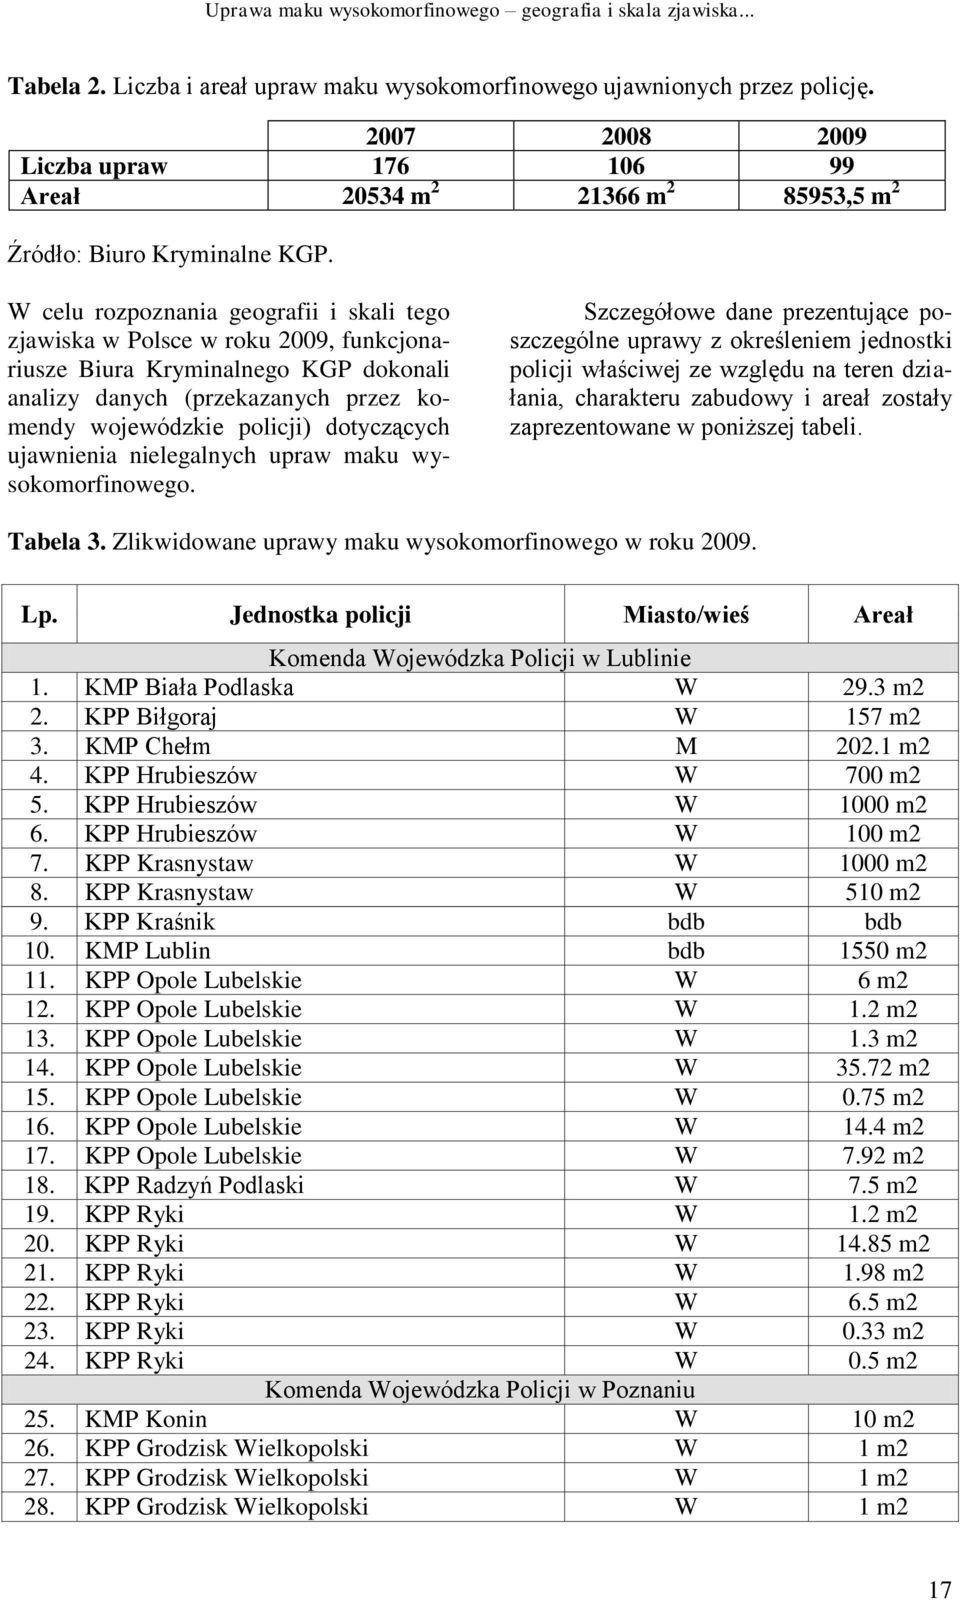 W celu rozpoznania geografii i skali tego zjawiska w Polsce w roku 2009, funkcjonariusze Biura Kryminalnego KGP dokonali analizy danych (przekazanych przez komendy wojewódzkie policji) dotyczących